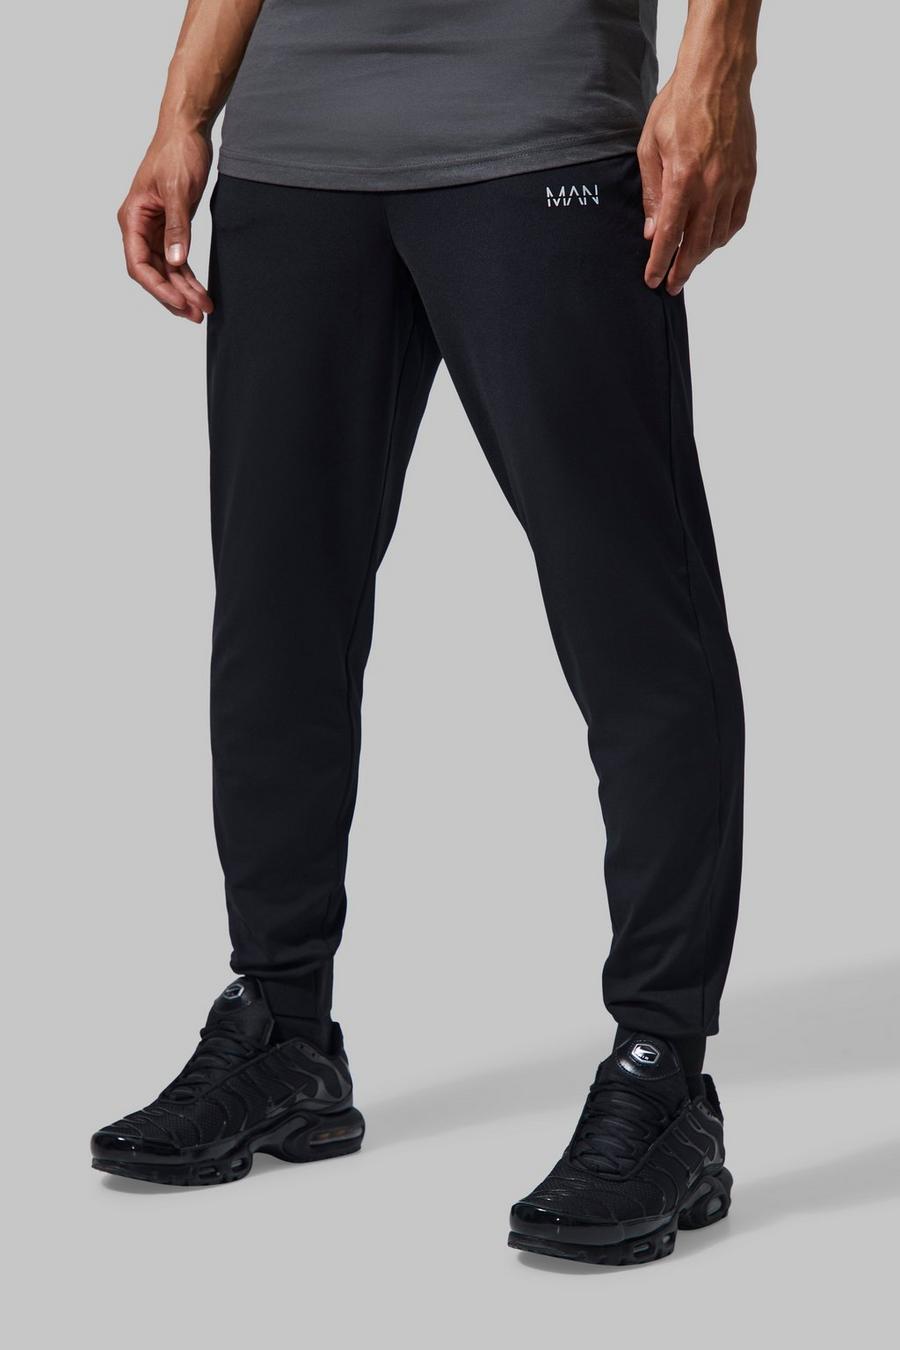 Pantaloni tuta da palestra Man Active con vita fissa, Black negro